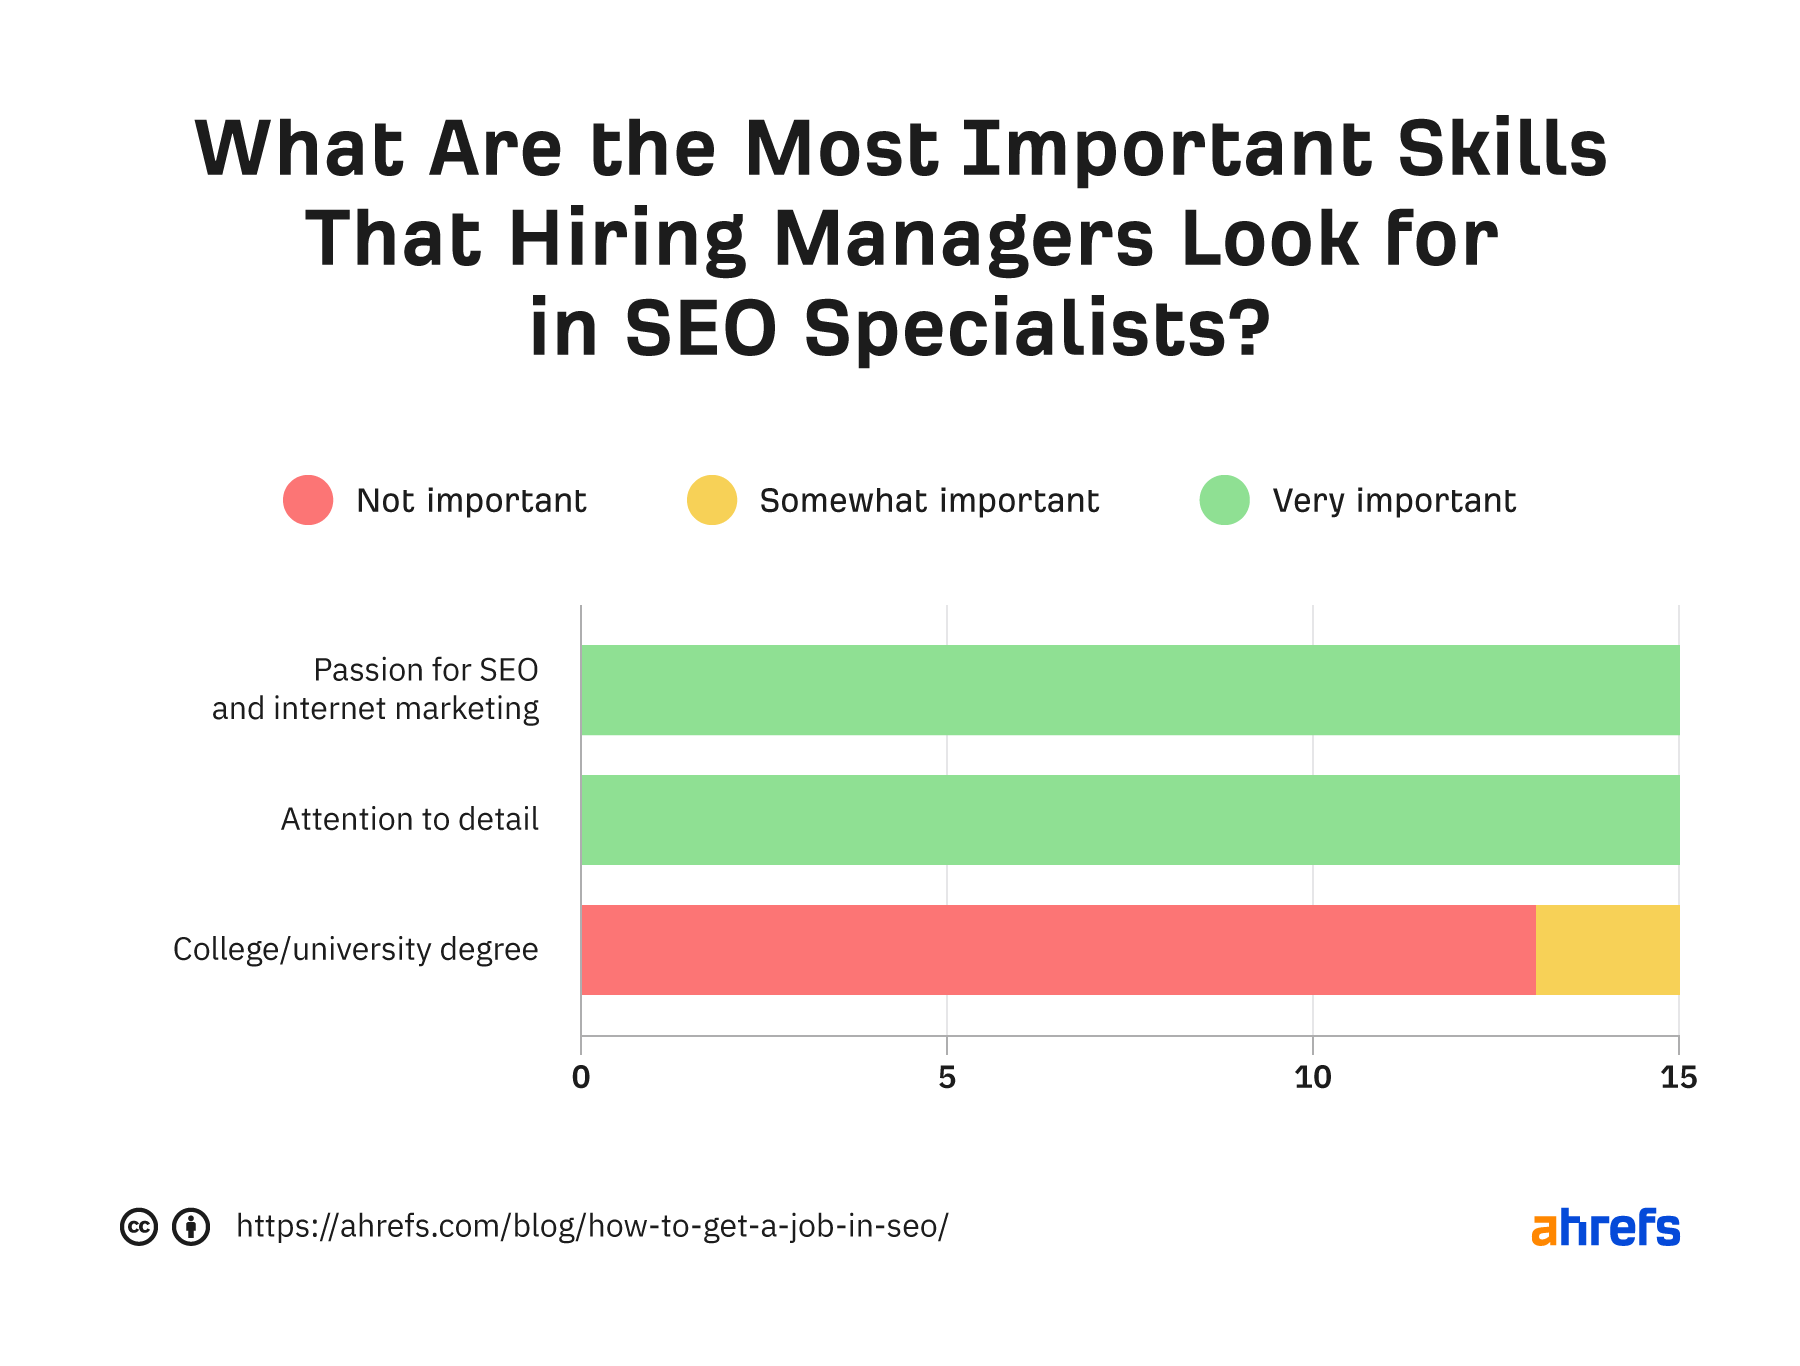 As habilidades mais importantes que os gerentes de contratação procuram em especialistas em SEO